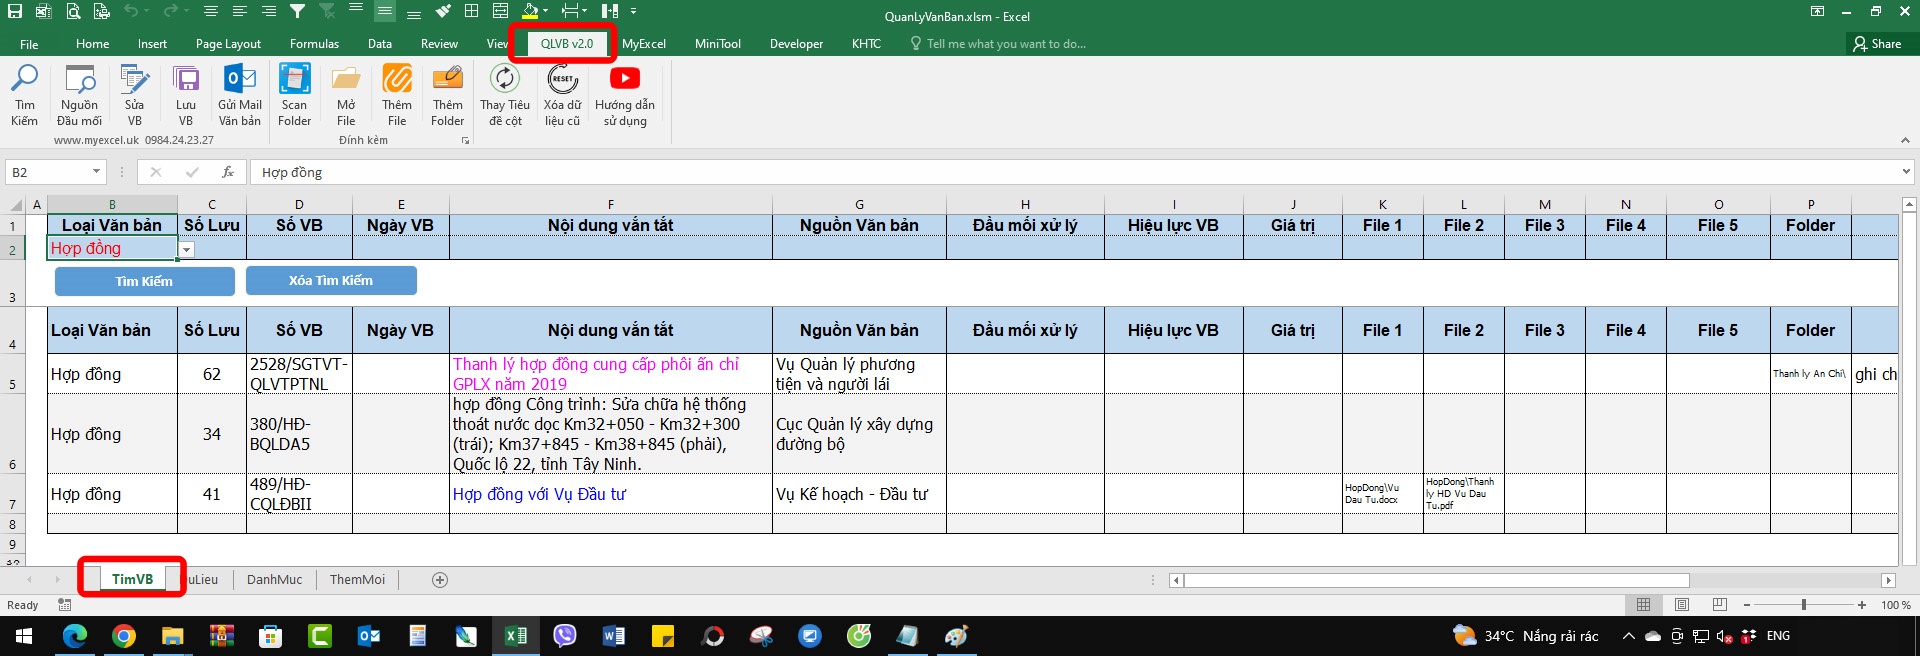 Hướng dẫn file quản lý văn bản bằng Excel minh họa cách tạo